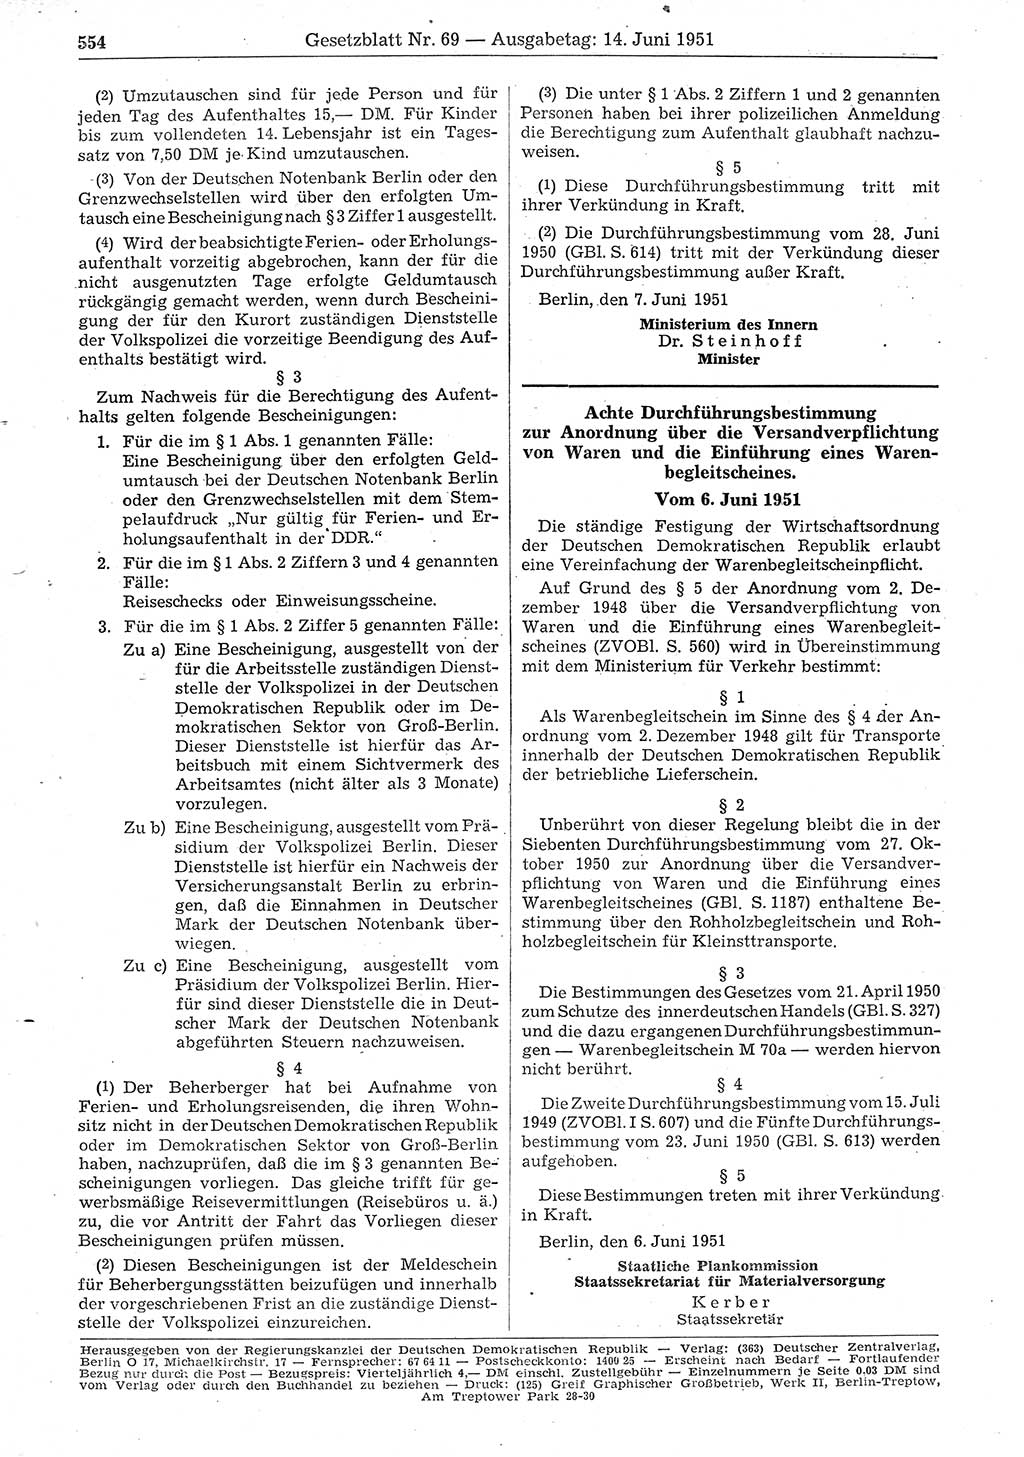 Gesetzblatt (GBl.) der Deutschen Demokratischen Republik (DDR) 1951, Seite 554 (GBl. DDR 1951, S. 554)